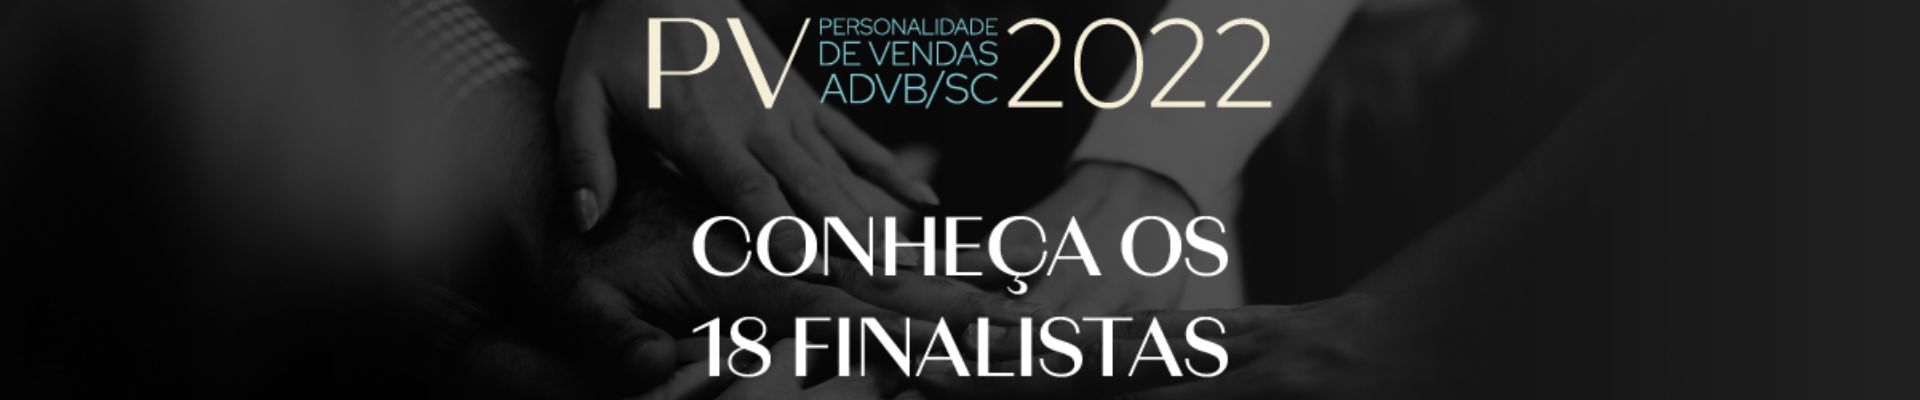 ADVB/SC divulga os 18 semifinalistas ao Prêmio Personalidade de Vendas 2022